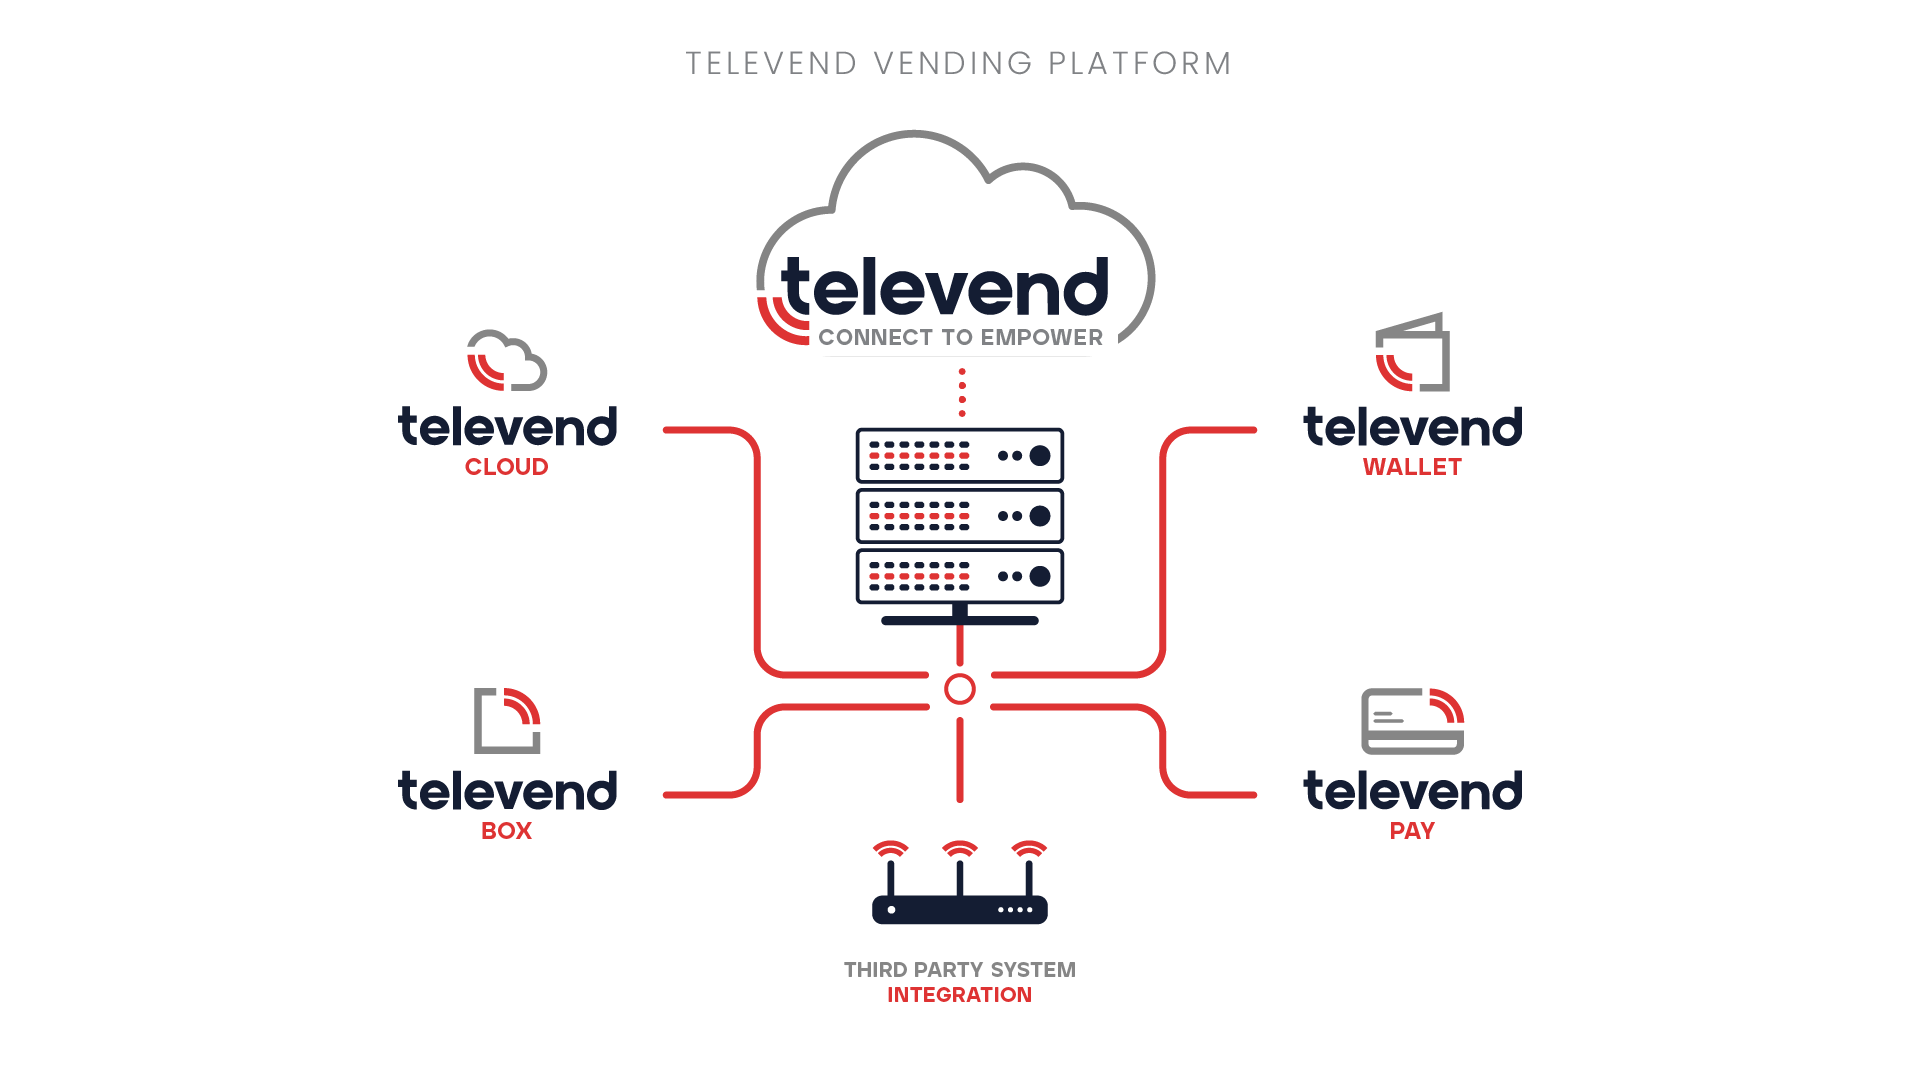 Televend Vending Platform